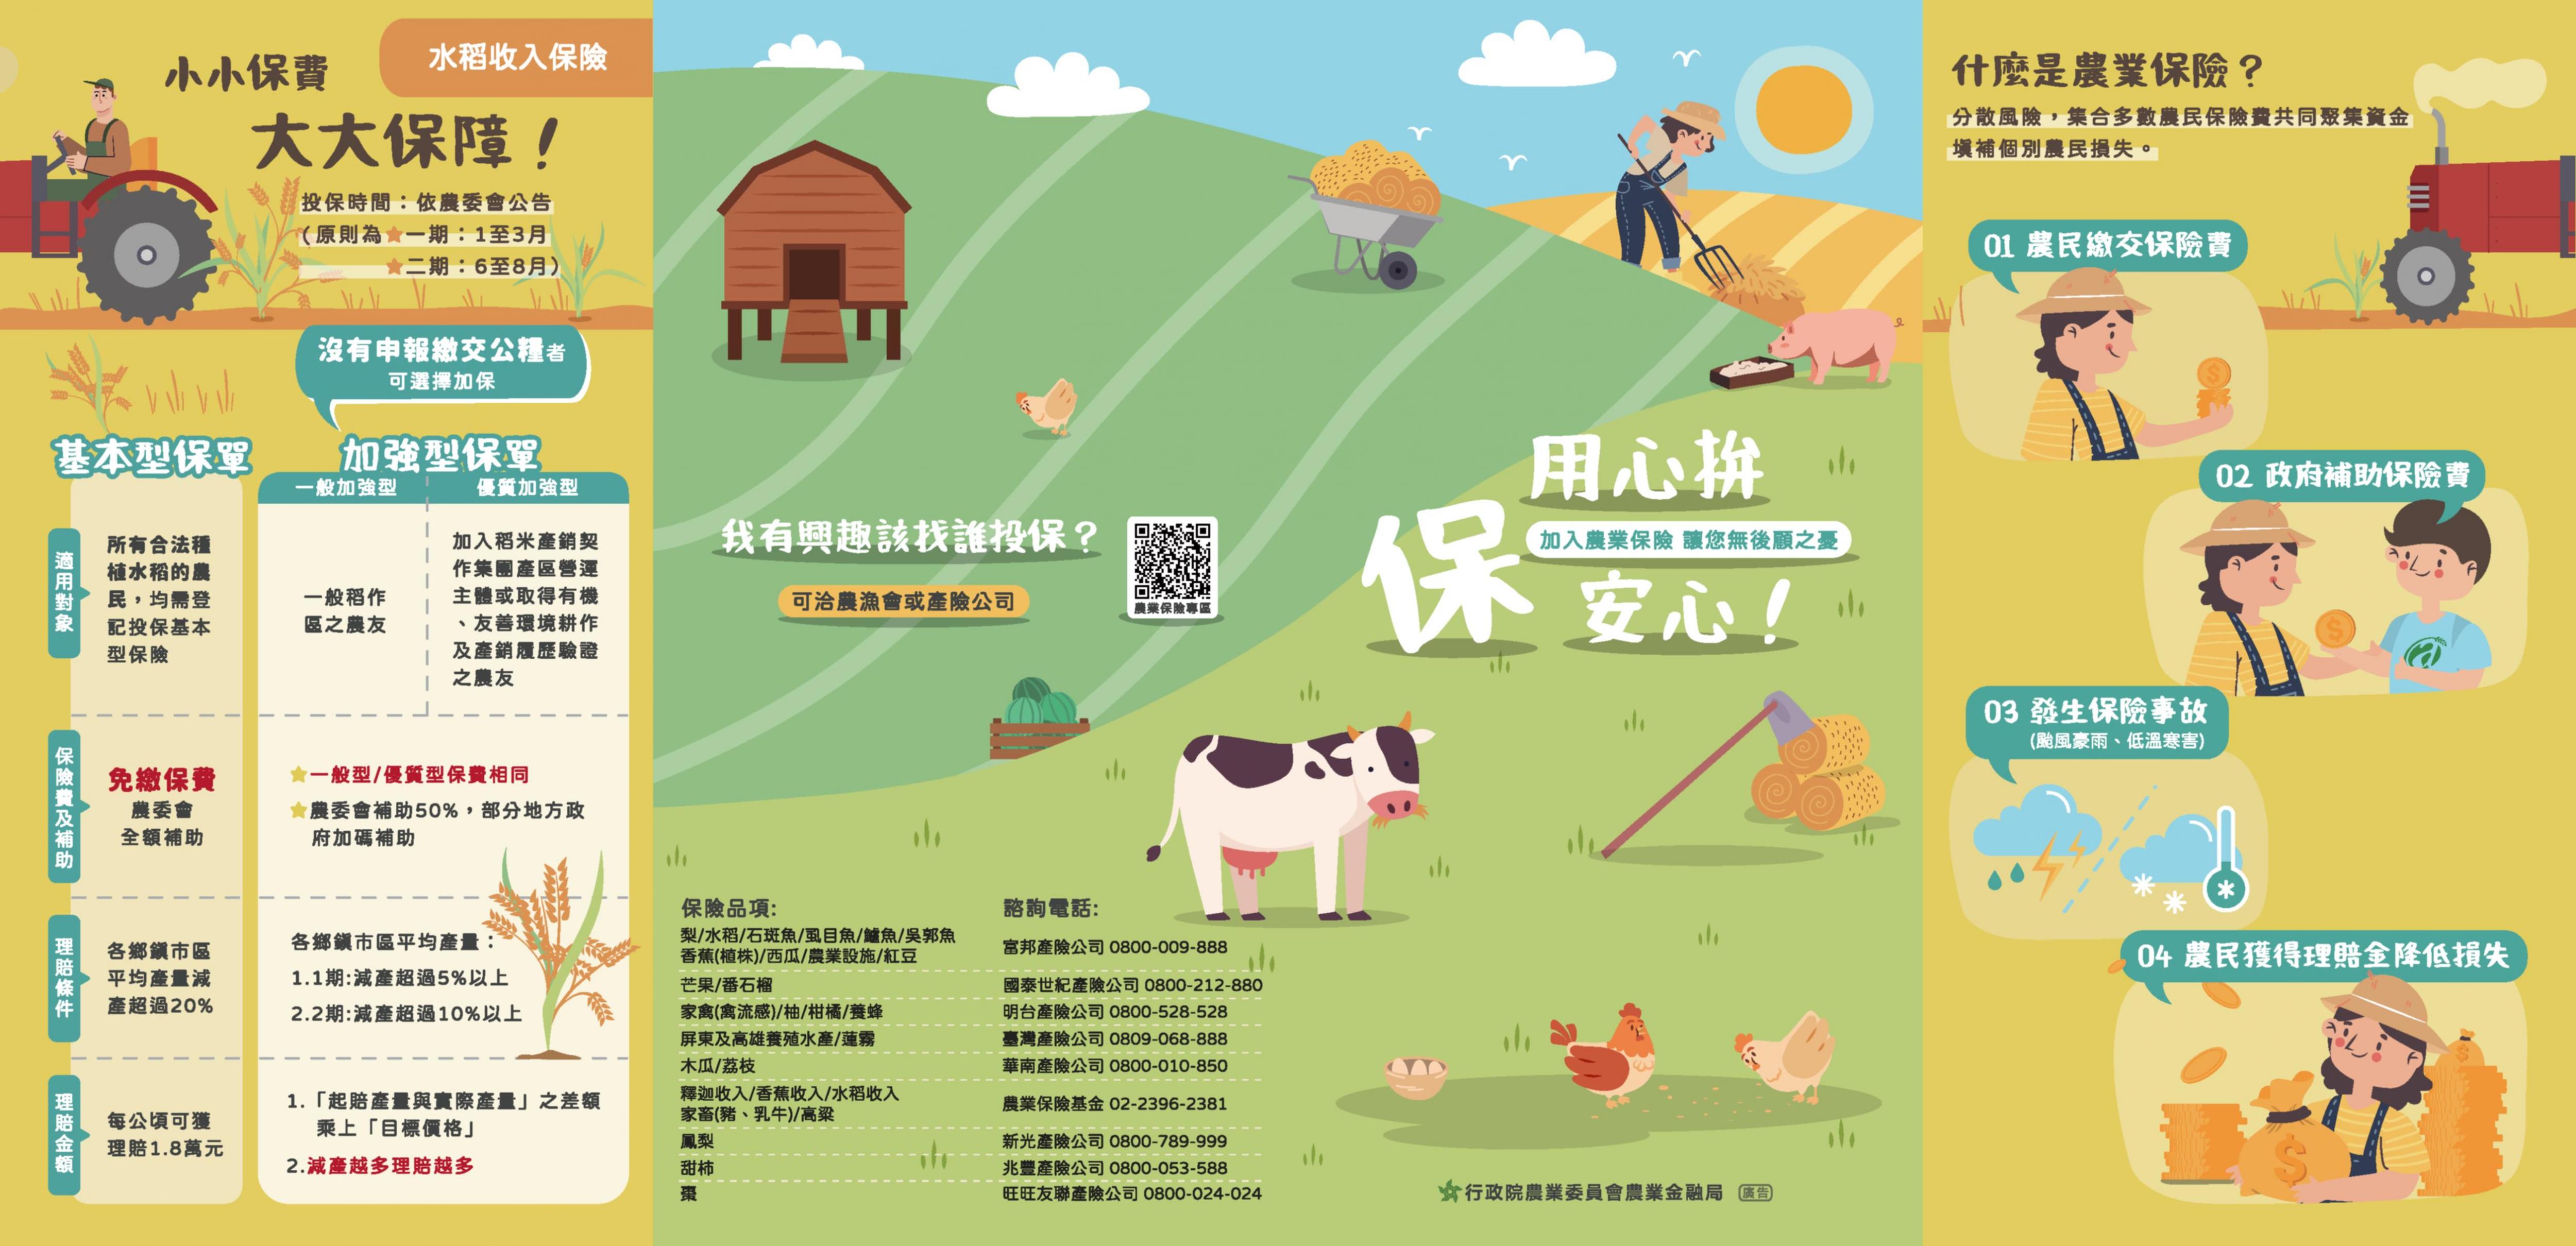 中華民國農民團體幹部聯合訓練協會辦理「農業保險政策型保單」推廣農業保險